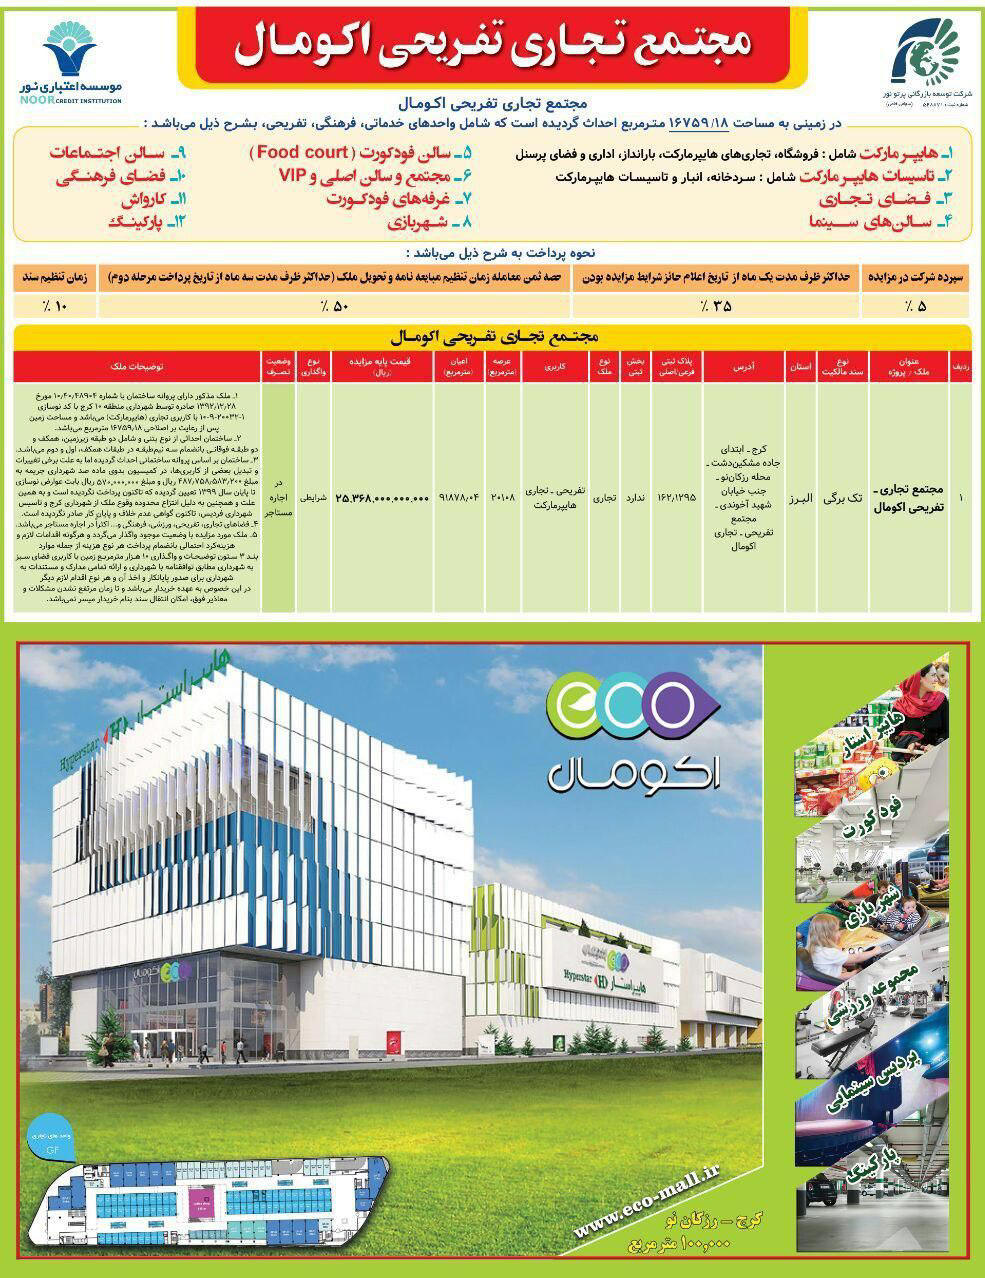 آگهی مجتمع تجاری تفریحی اکومال چاپ شده در روزنامه همشهری